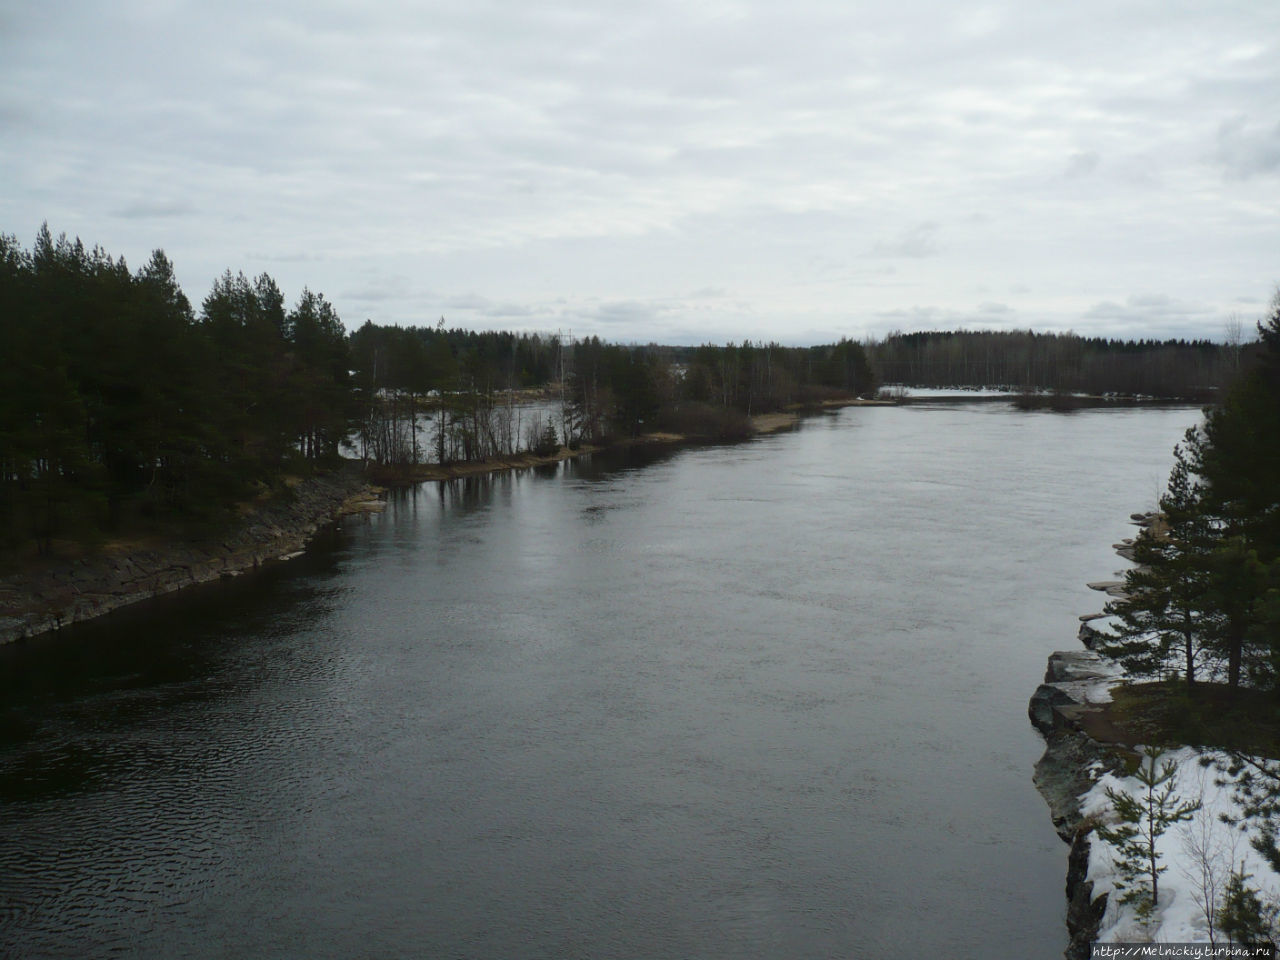 Мост через Кюмийоки Мюллюкоски, Финляндия